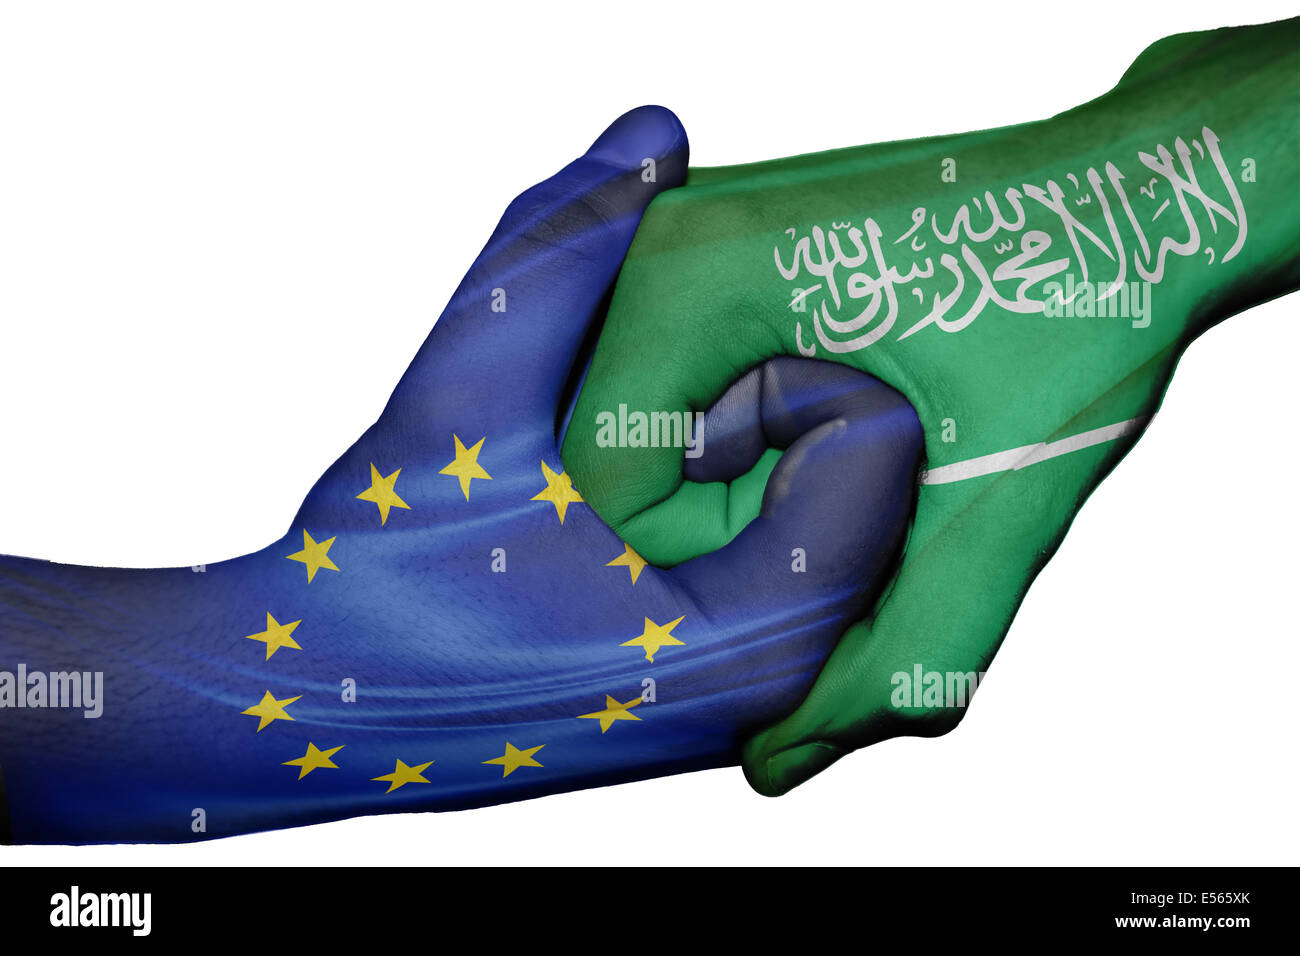 Handshake diplomatiche tra paesi: bandiere di Unione europea e Arabia Saudita sovradipinta le due mani Foto Stock